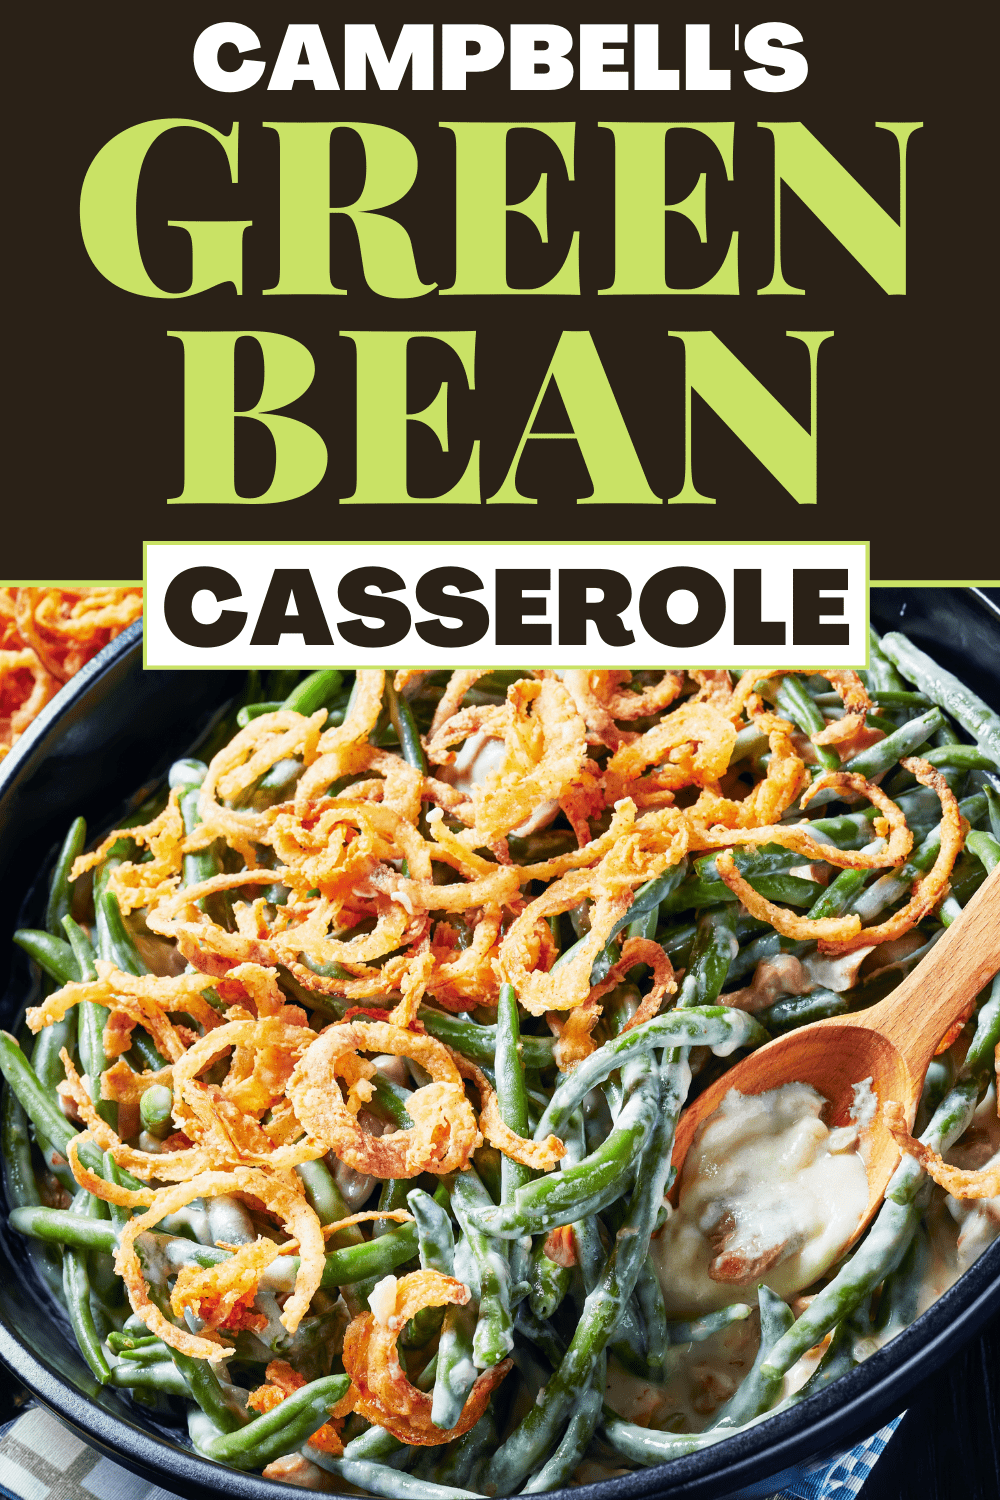 Campbell's Green Bean Casserole